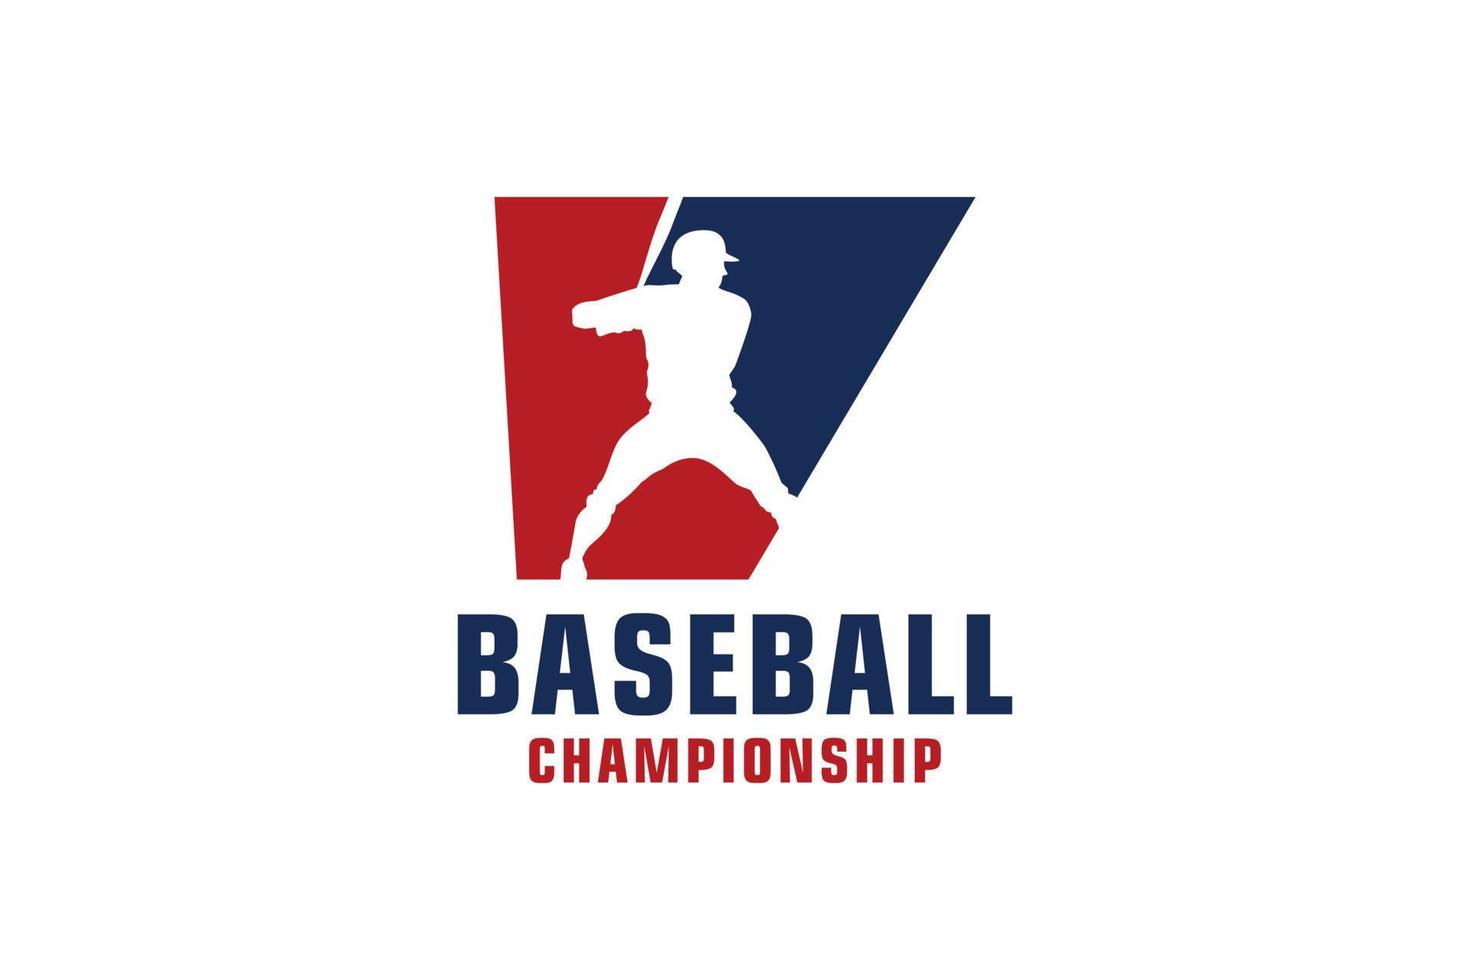 Buchstabe v mit Baseball-Logo-Design. Vektordesign-Vorlagenelemente für Sportteams oder Corporate Identity. vektor